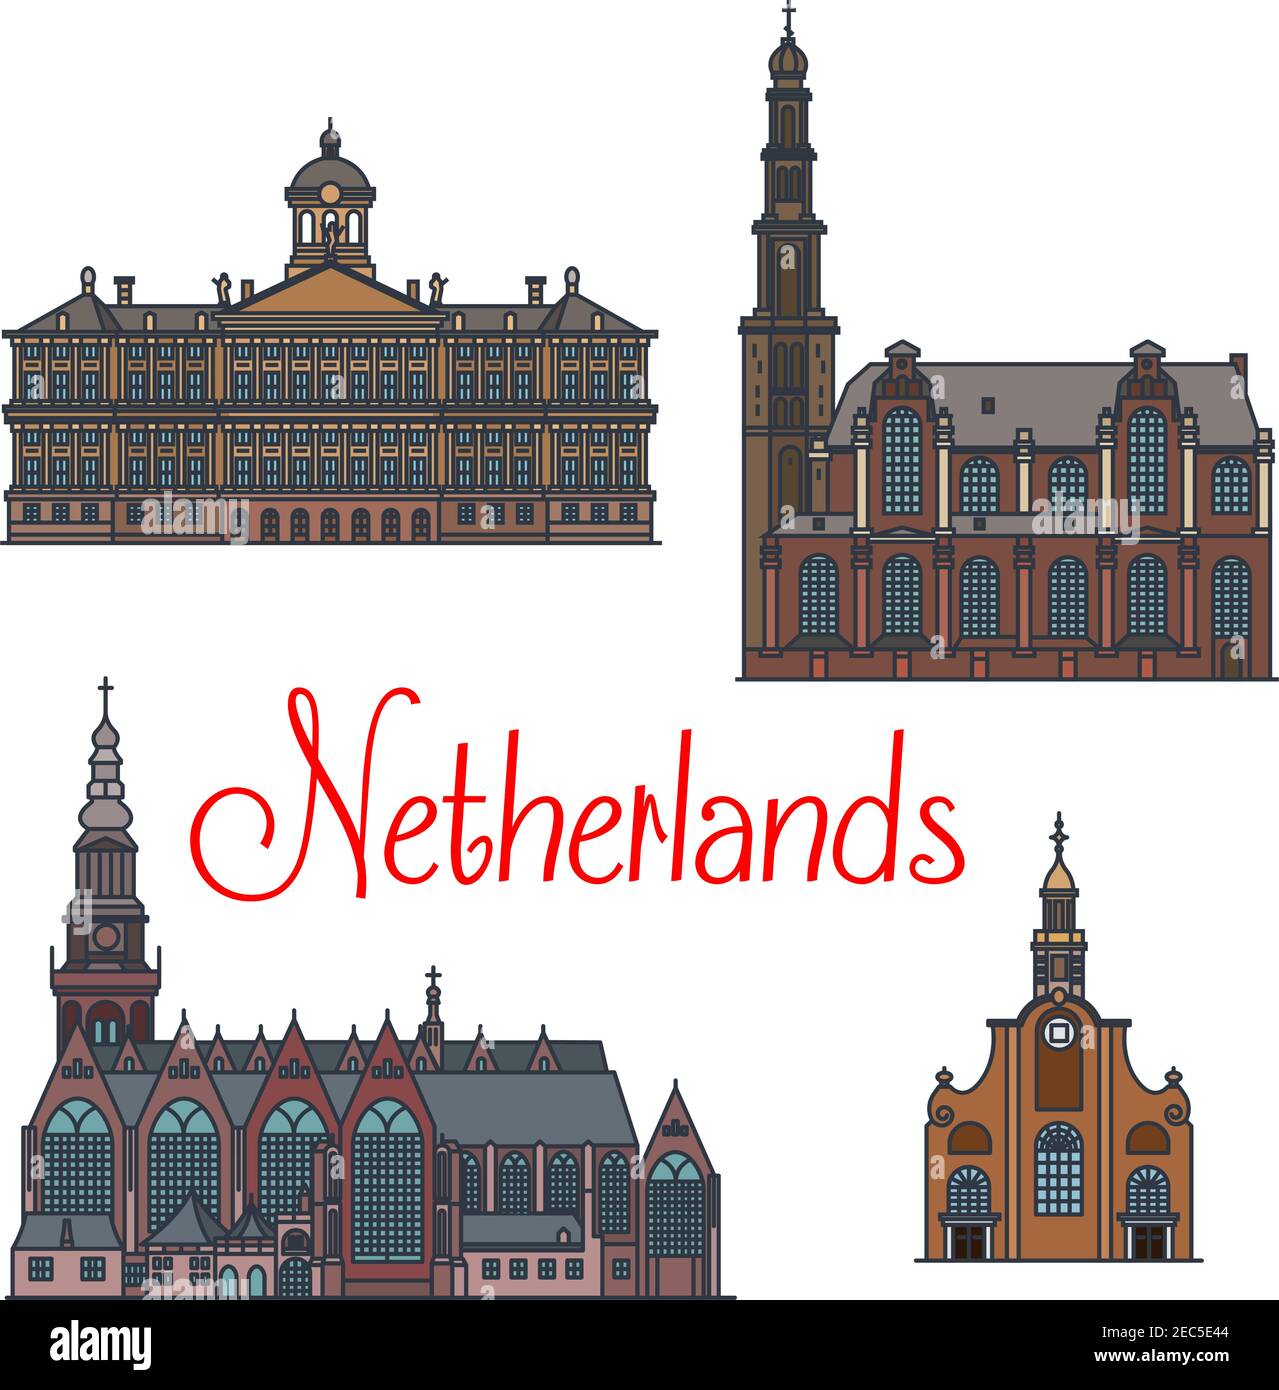 Famosi monumenti architettonici dei Paesi Bassi con icone sottili della chiesa più antica Oude Kerk, la chiesa riformata Westerkerk e il Palazzo reale in AMST Illustrazione Vettoriale